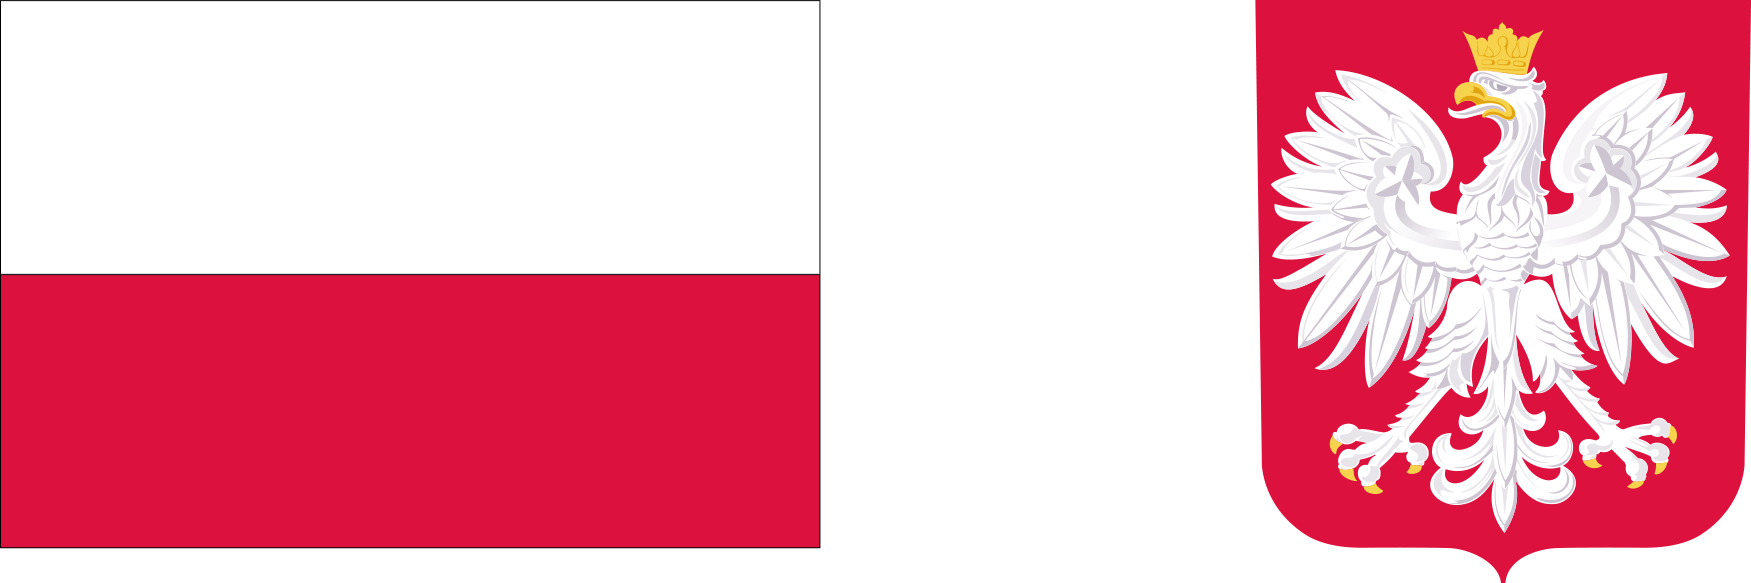 Od lewej strony polska flaga obok niej godło Rzeczypospolitej Polskiej - wizerunek orła białego ze złotą koroną na głowie zwróconej w prawo, z rozwiniętymi skrzydłami, z dziobem i szponami złotymi, umieszczony w czerwonym polu tarczy